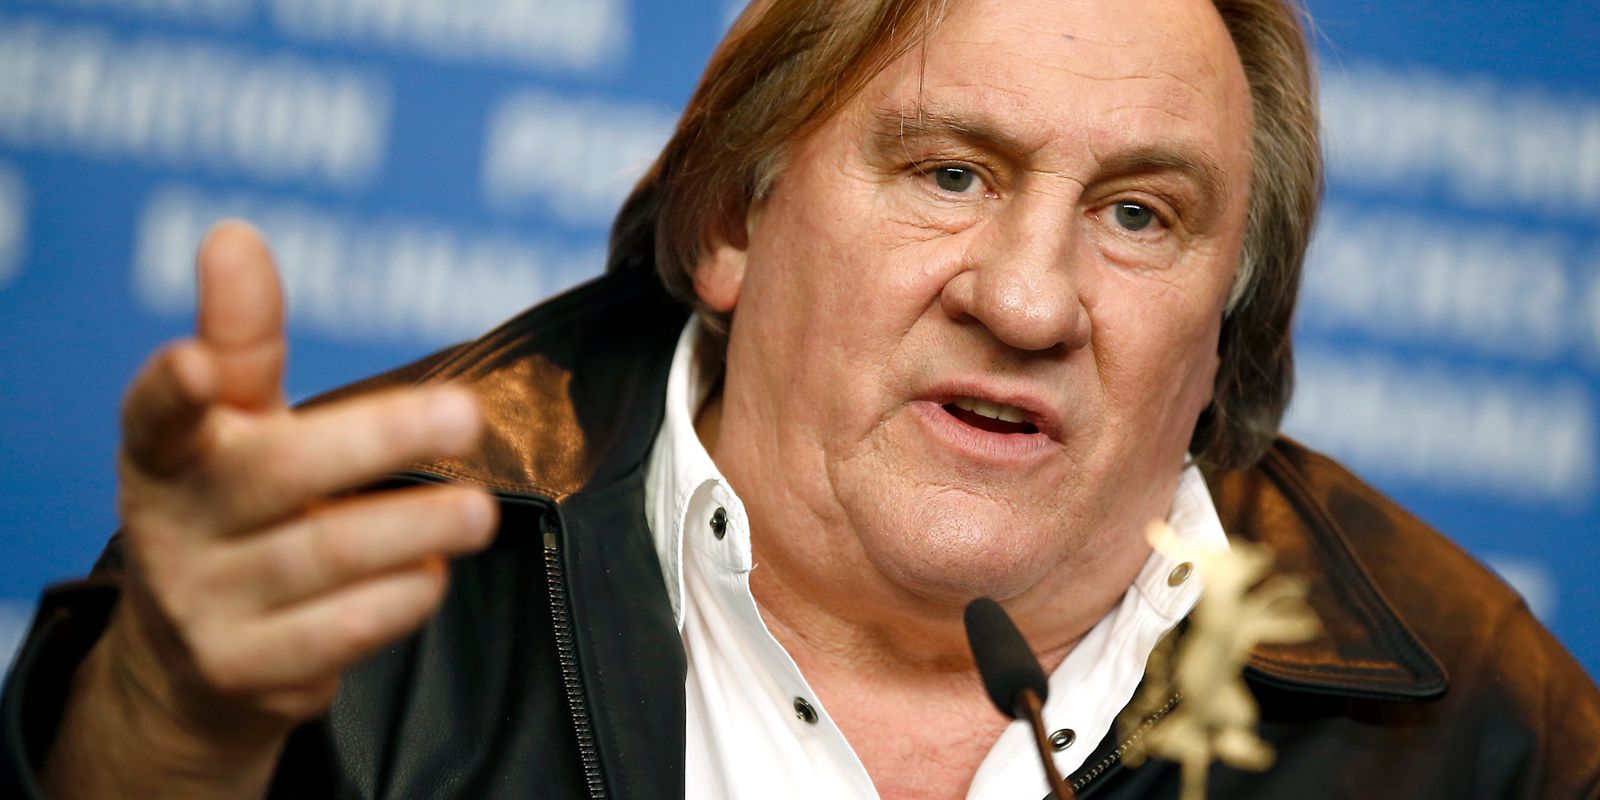 depardieu ställs inför rätta för sexövergrepp